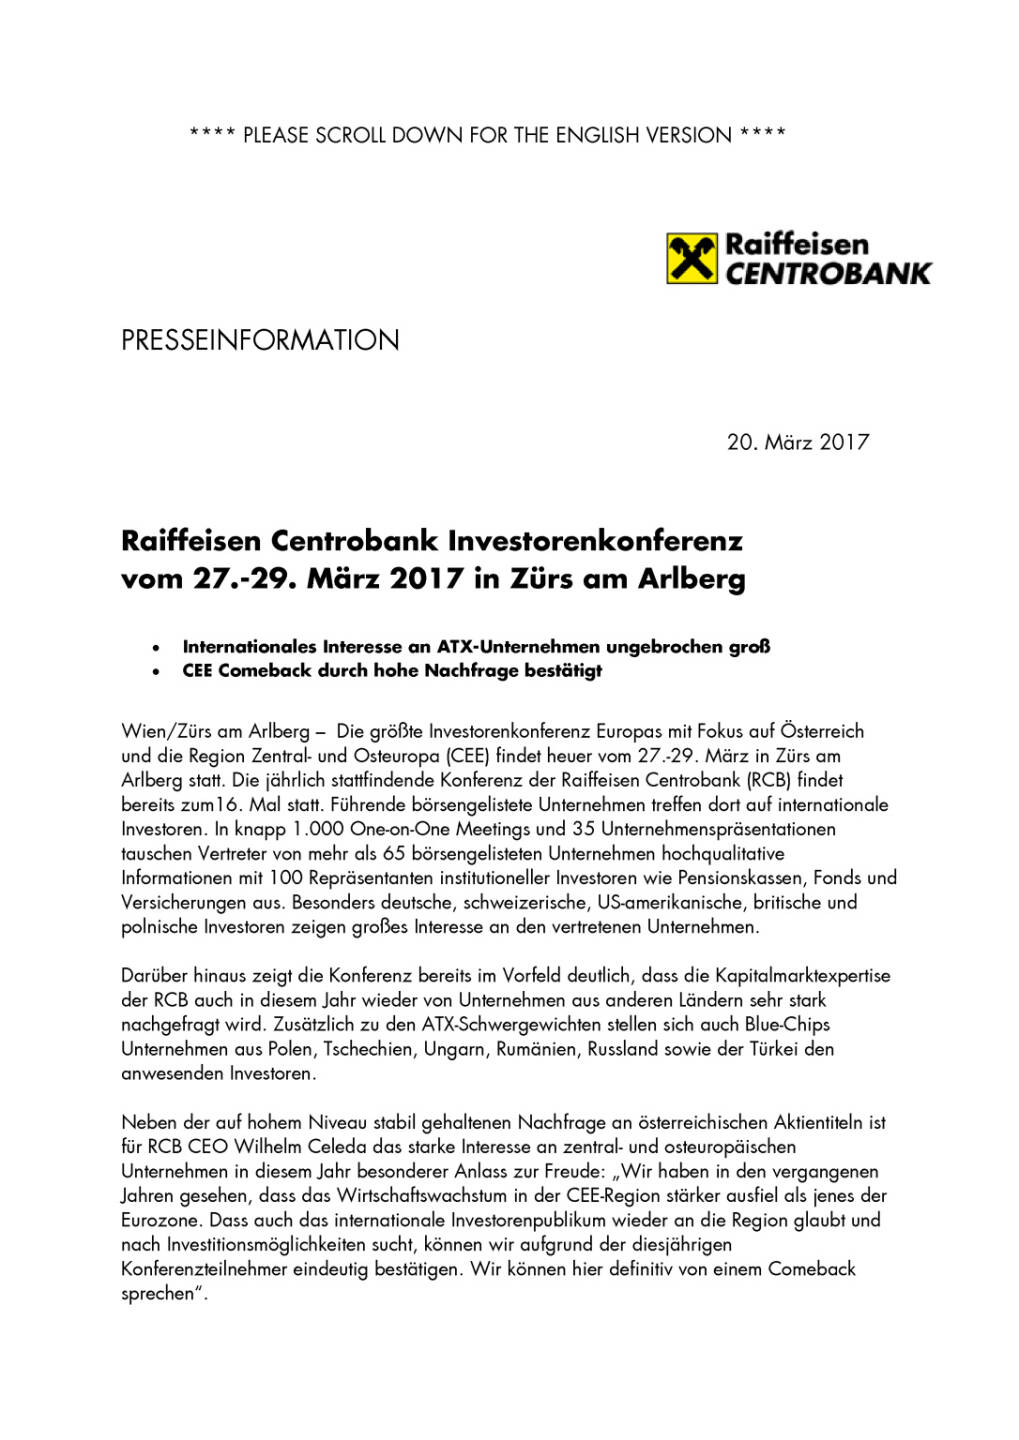 Raiffeisen Centrobank Investorenkonferenz vom 27.-29. März 2017 in Zürs am Arlberg, Seite 1/3, komplettes Dokument unter http://boerse-social.com/static/uploads/file_2168_raiffeisen_centrobank_investorenkonferenz_vom_27-29_marz_2017_in_zurs_am_arlberg.pdf